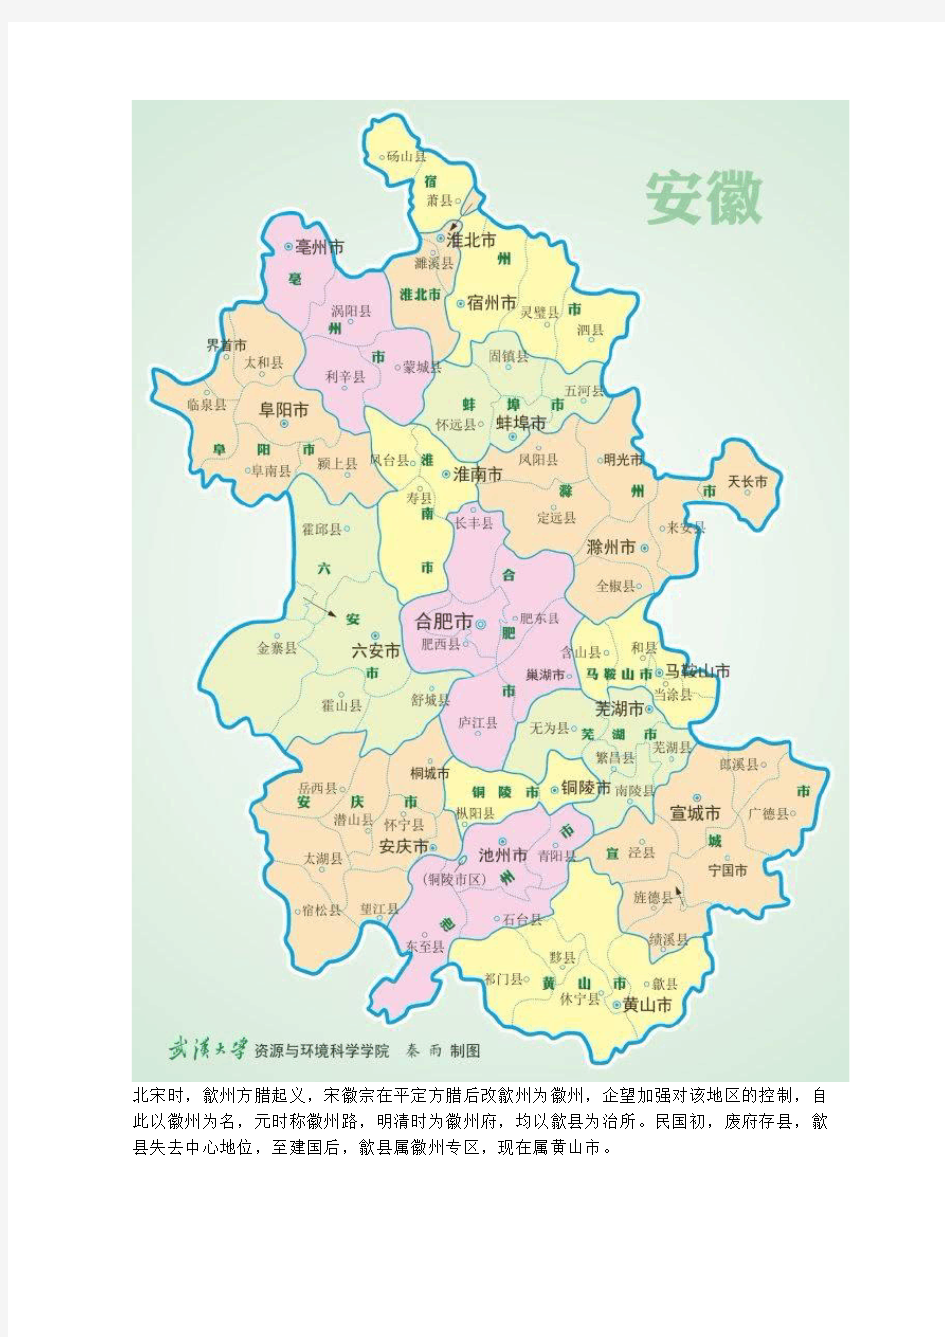 安徽首批国家历史文化名城共三座,入选时都为县,现两县一地级市